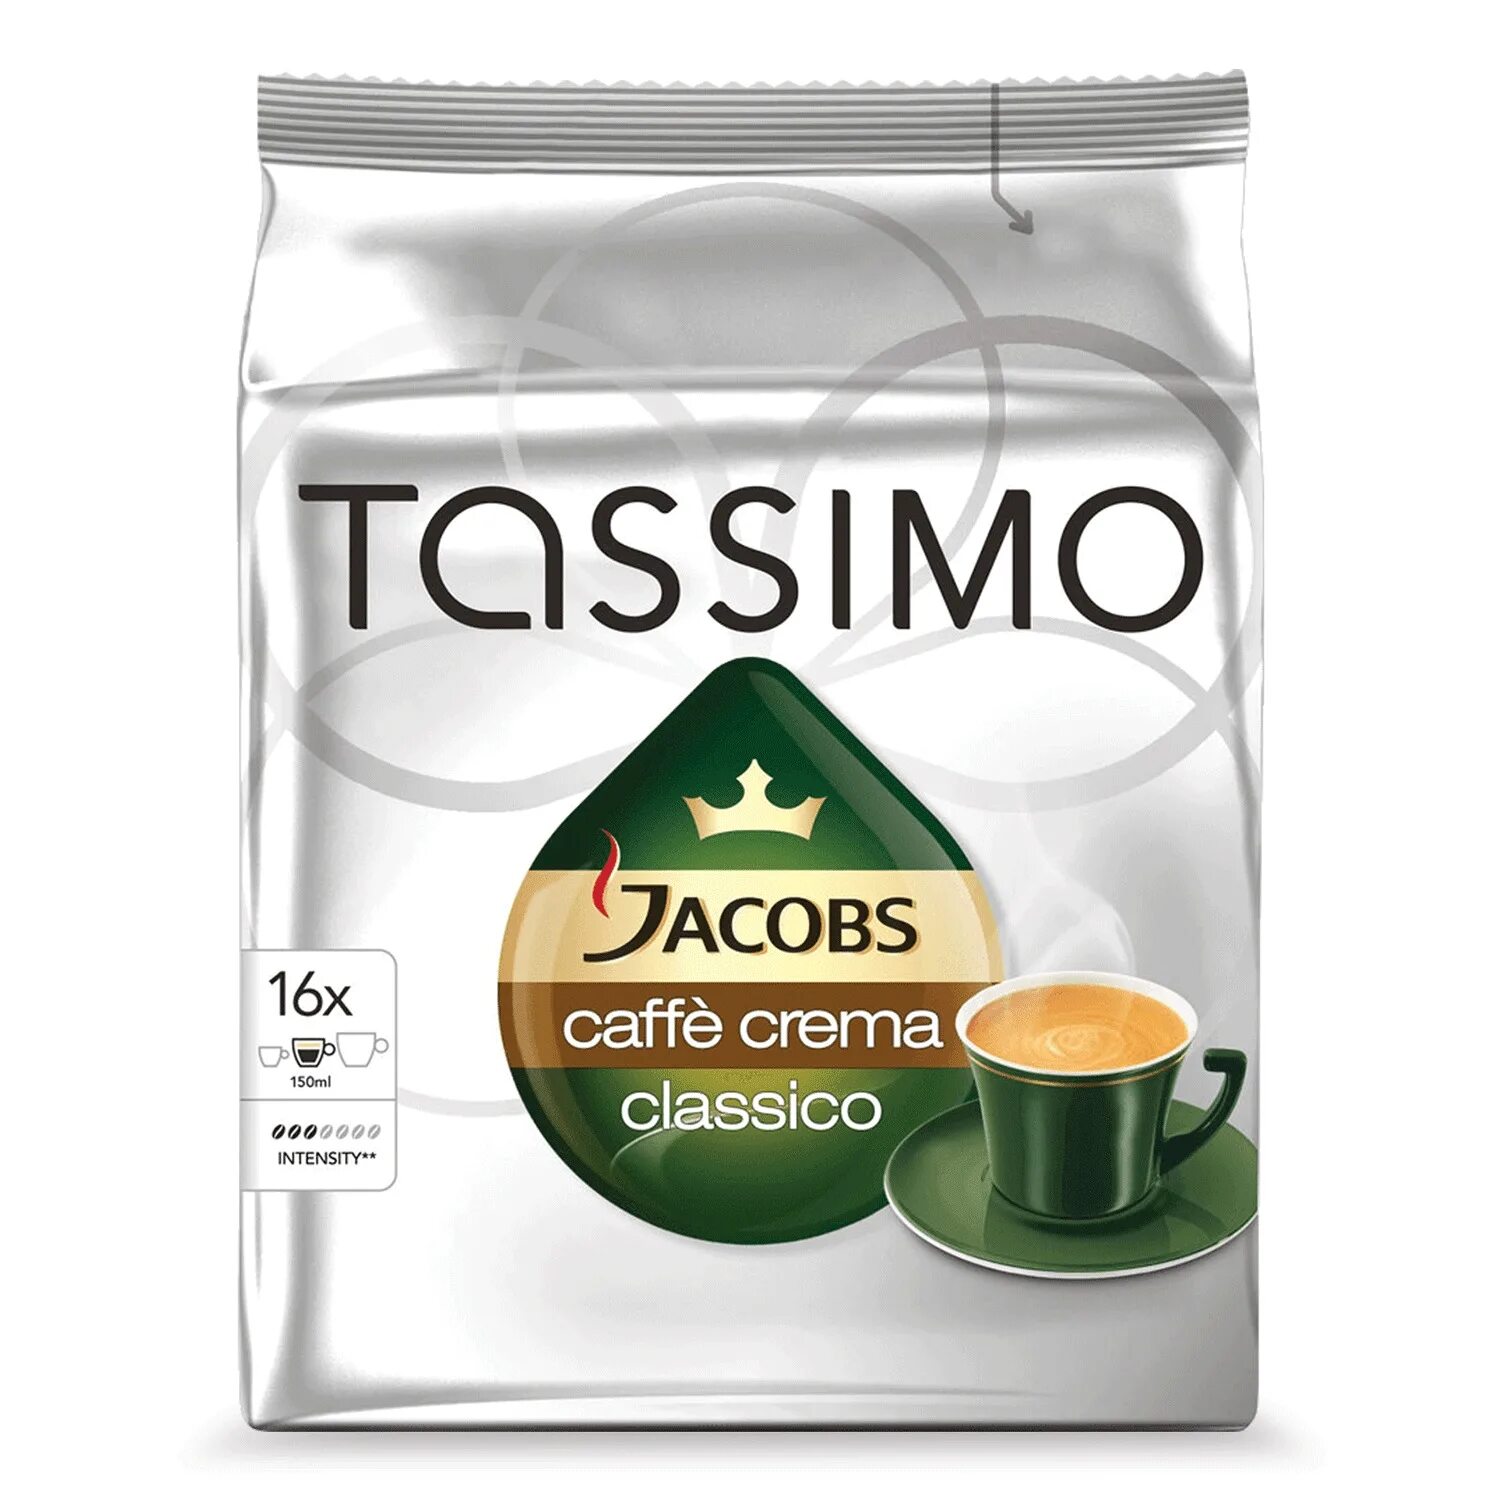 Бош тассимо капсулы купить. Кофе Якобс Тассимо. Tassimo Jacobs Cafe crema Classico. Капсулы для кофемашины Jacobs Tassimo. Капсулы Якобс для кофемашины Якобс.